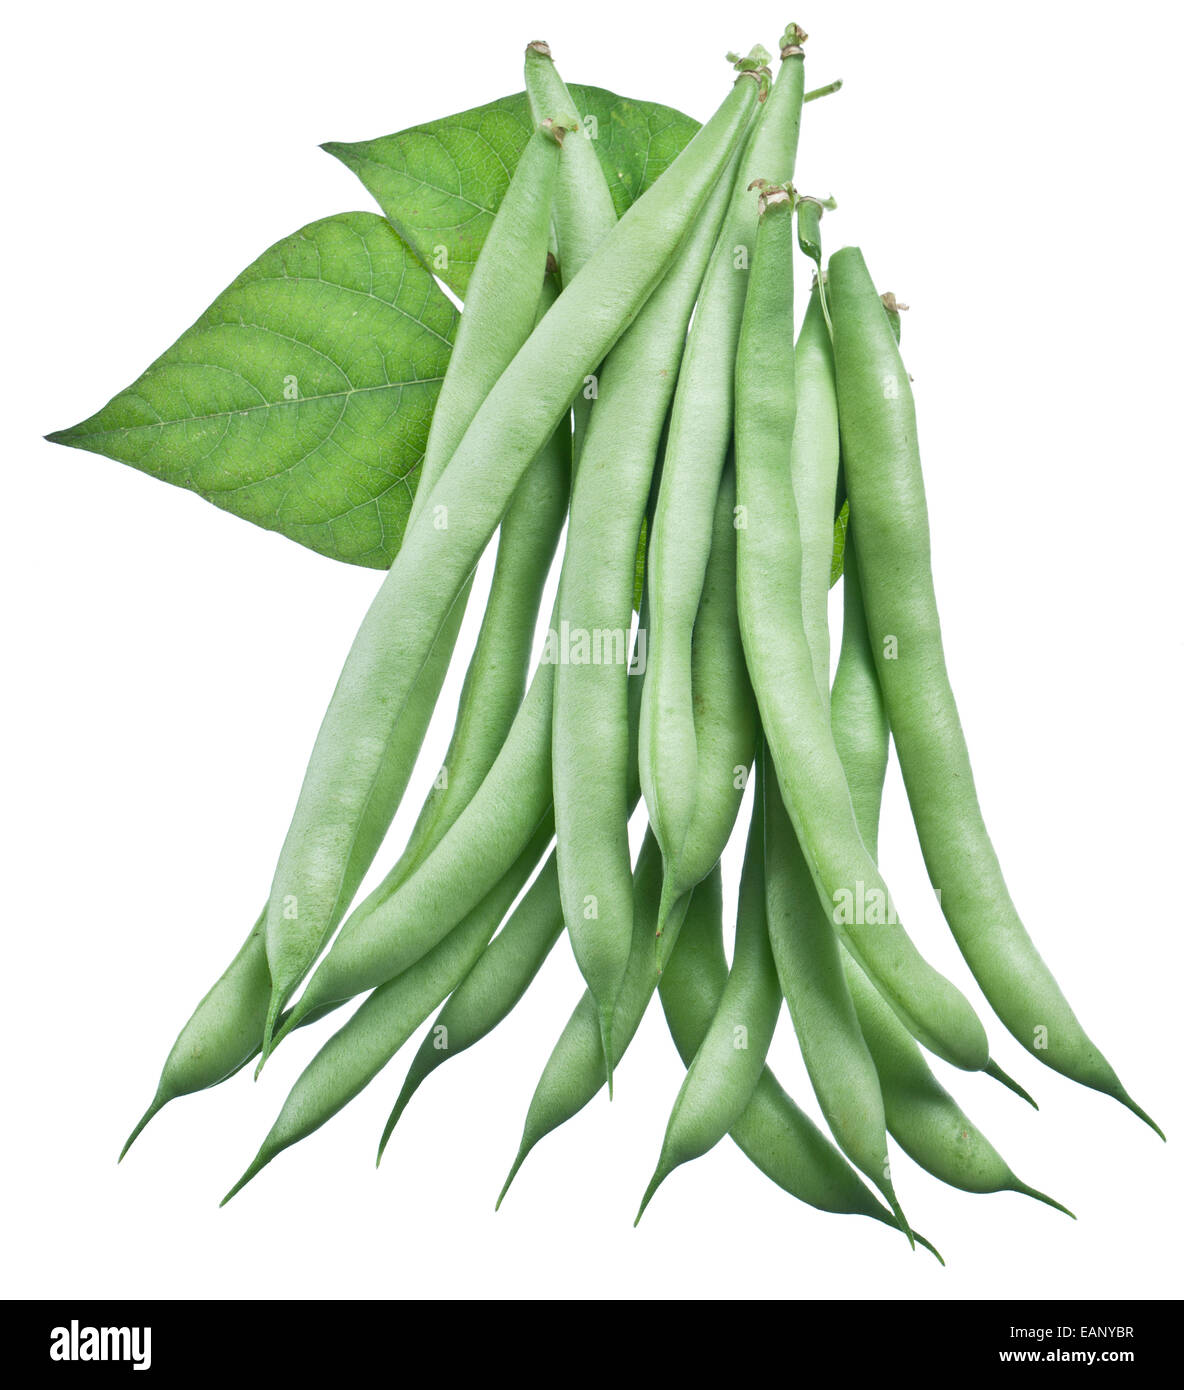 Frische grüne Bohnen isoliert auf einem weißen Hintergrund. Stockfoto